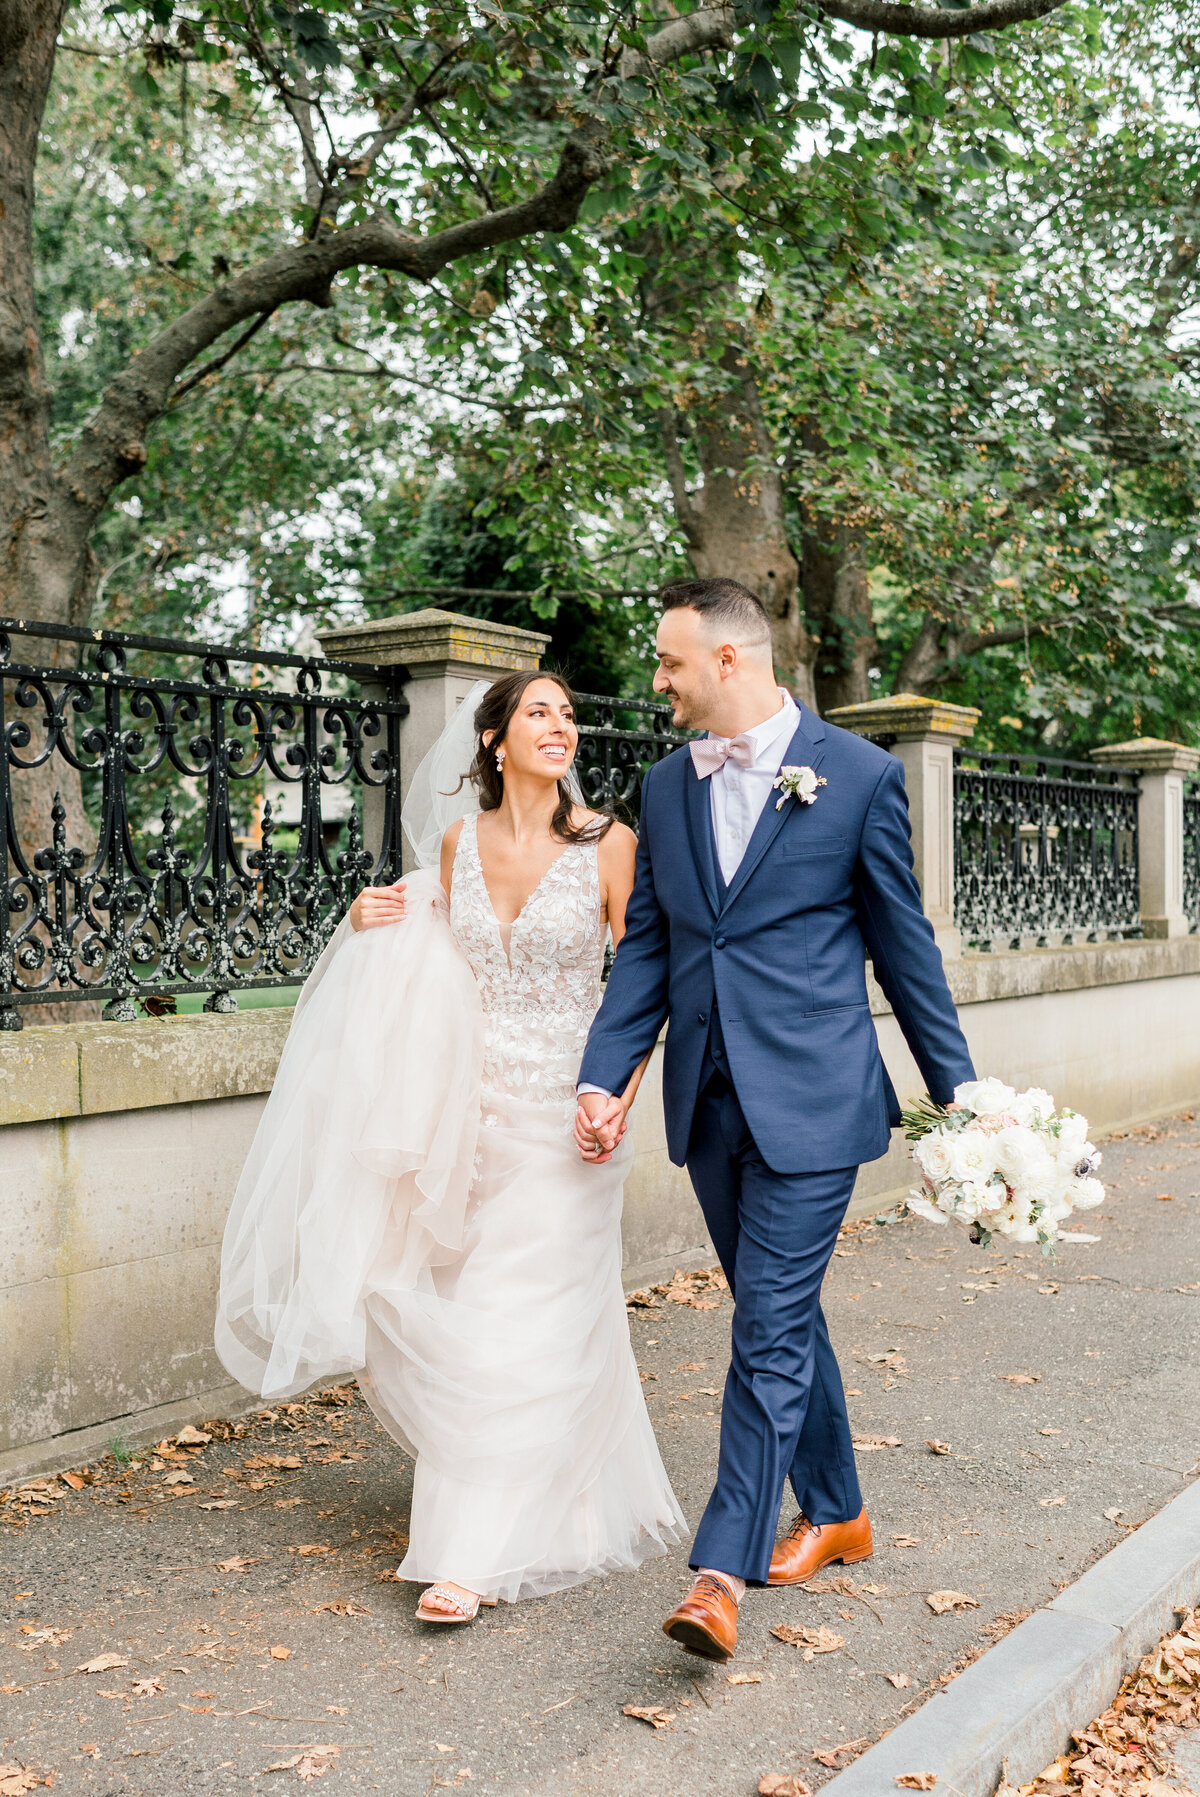 MMMARINO_WEDDING2021_BMEDEIROSPHOTOGRAPHY-553